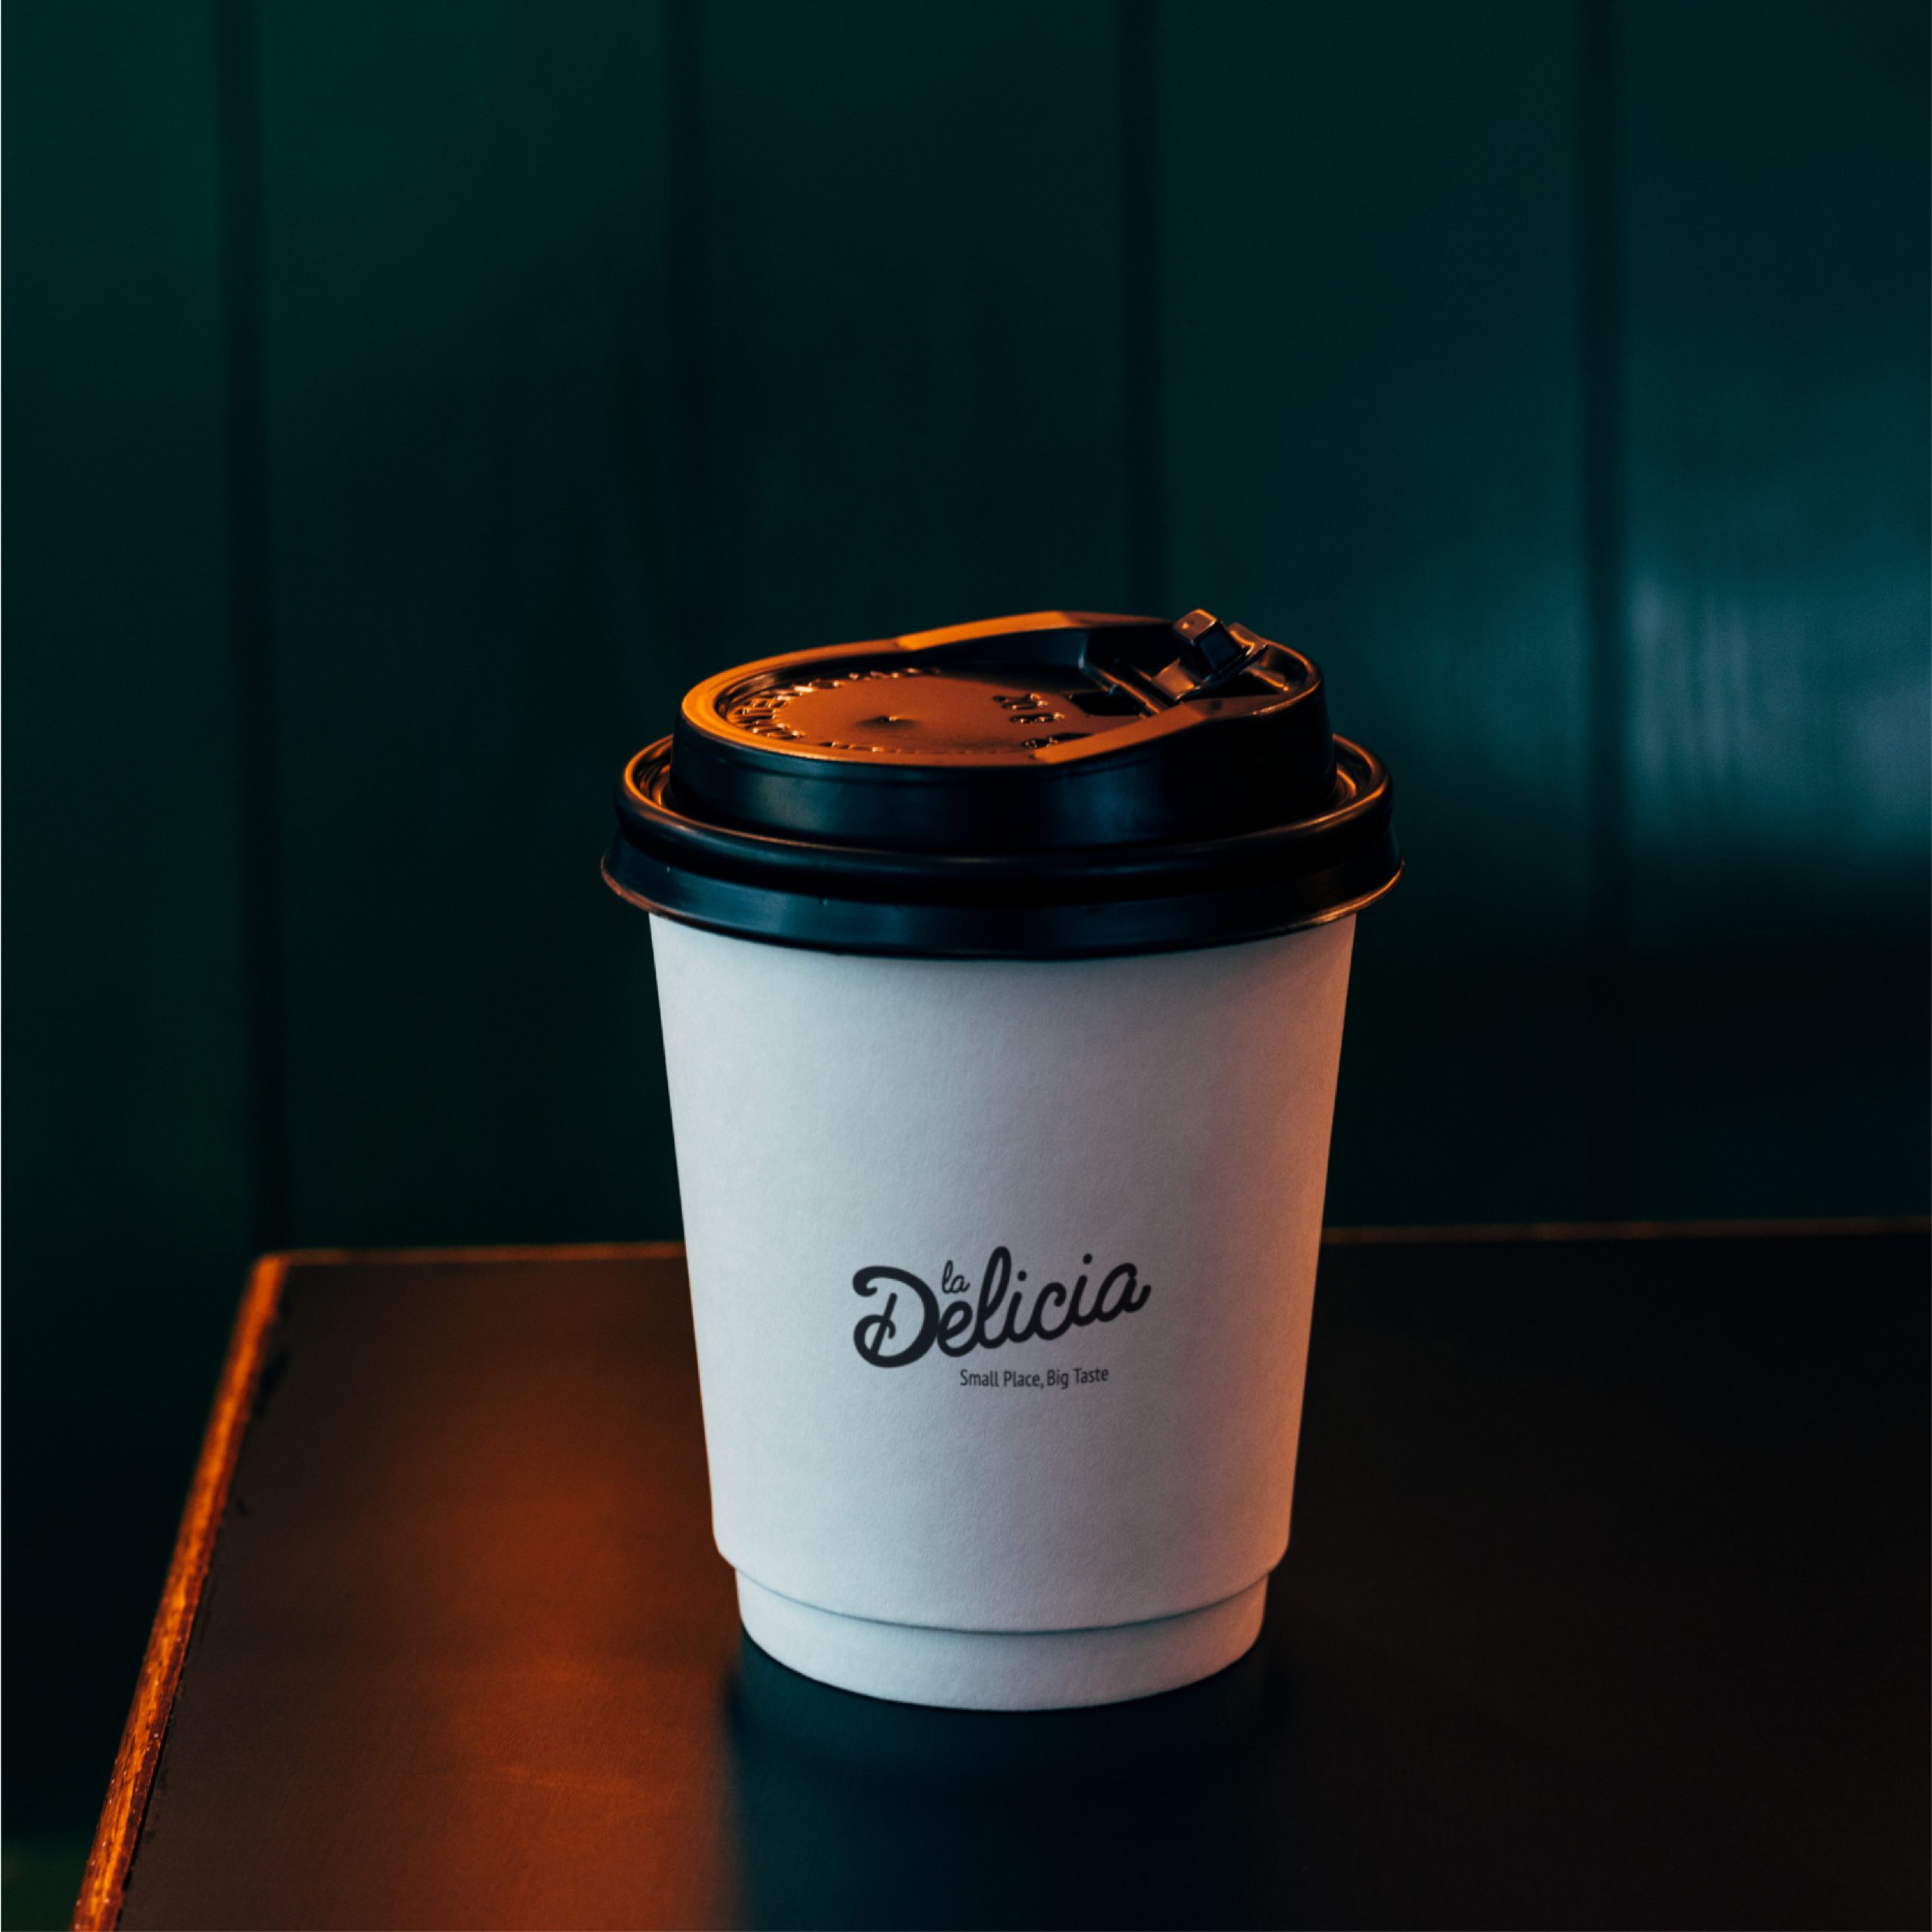 La Delicia coffee